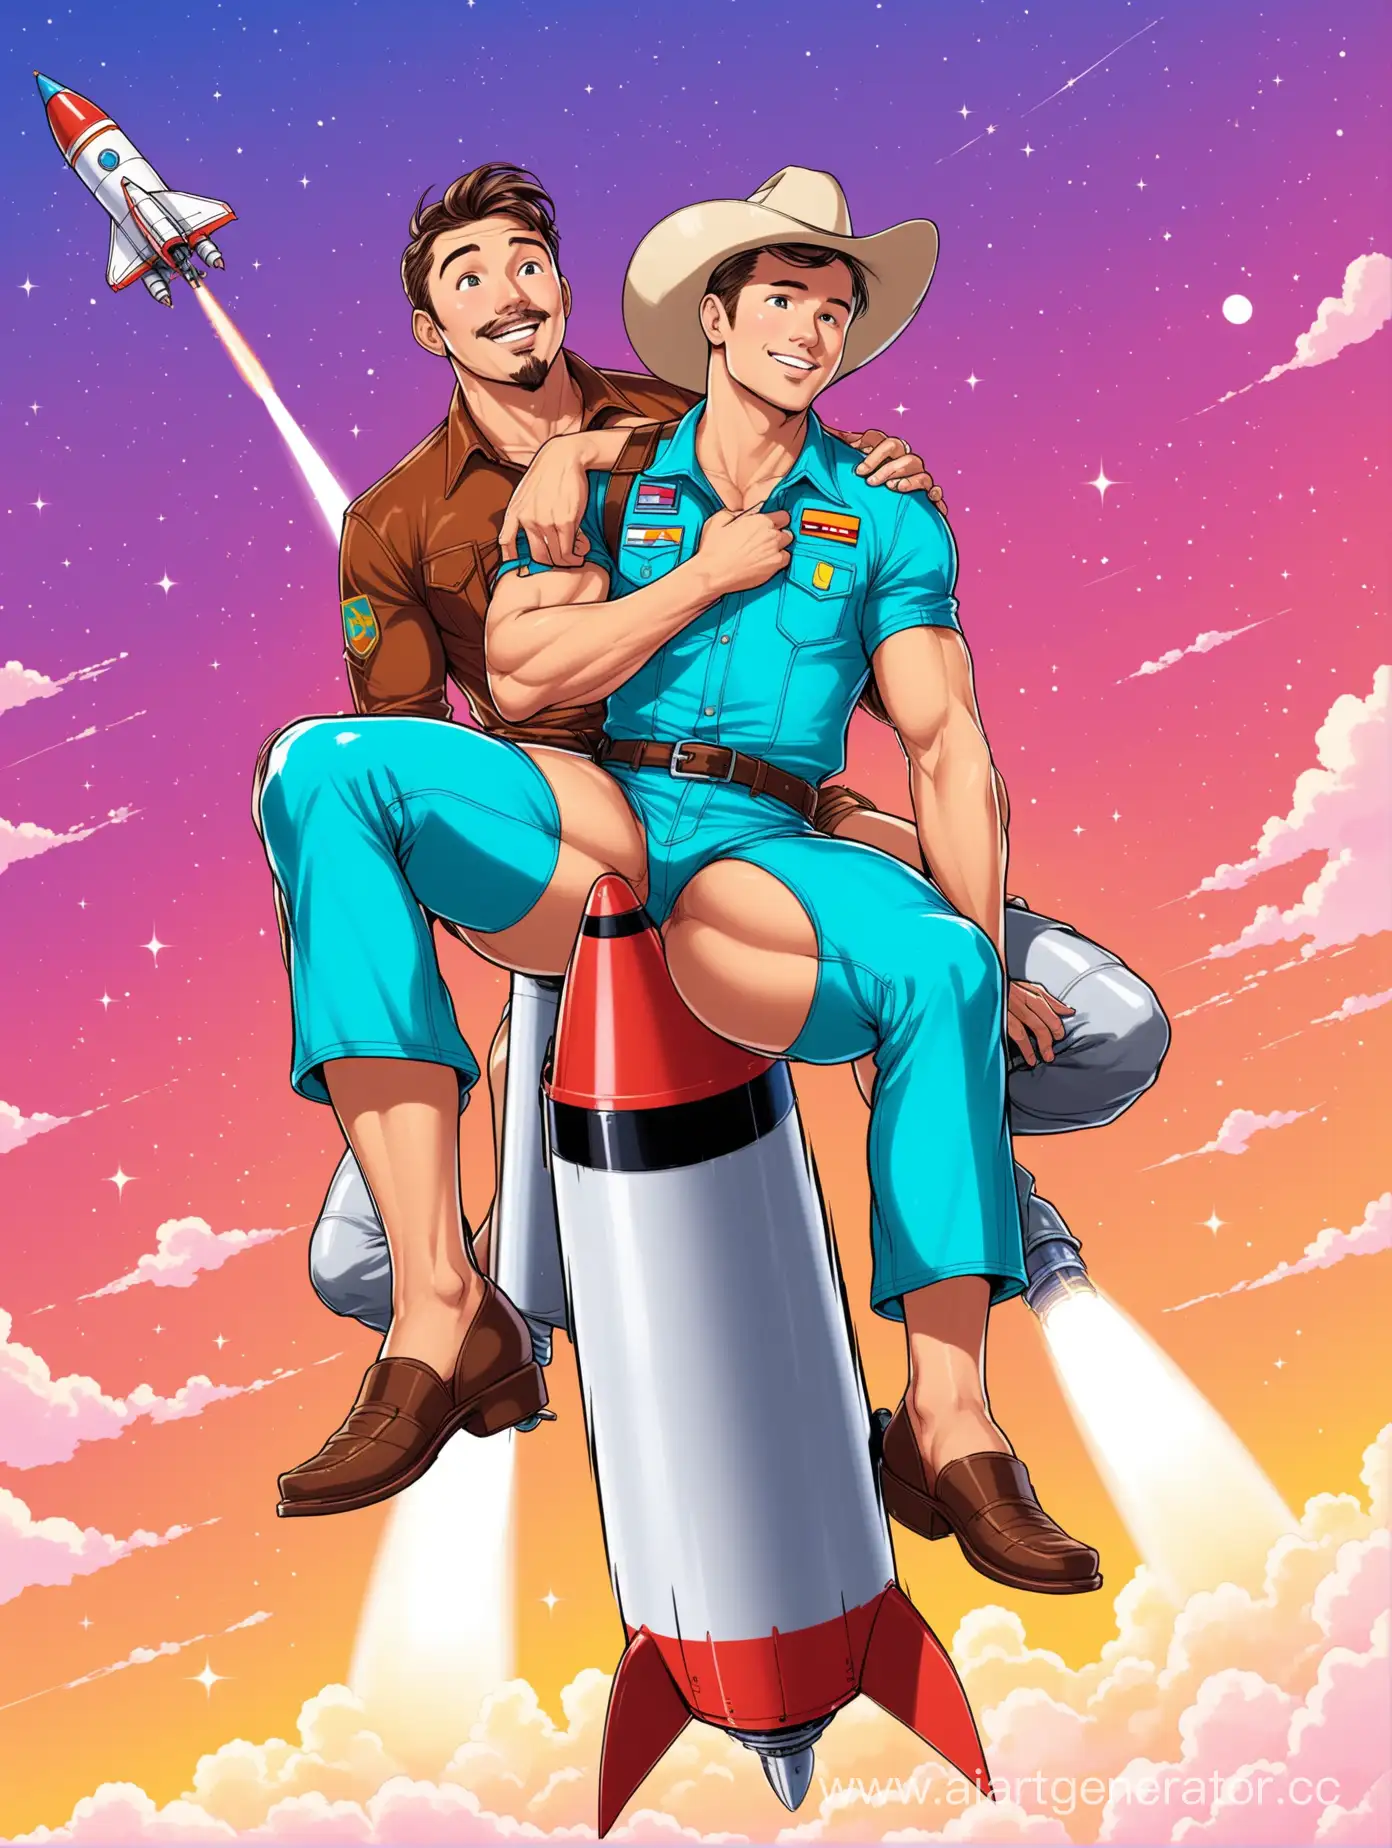 ковбой в стрингах кокетливо сиди на ракете и летит в сторону казахстана на свидание со своим сантехником геем